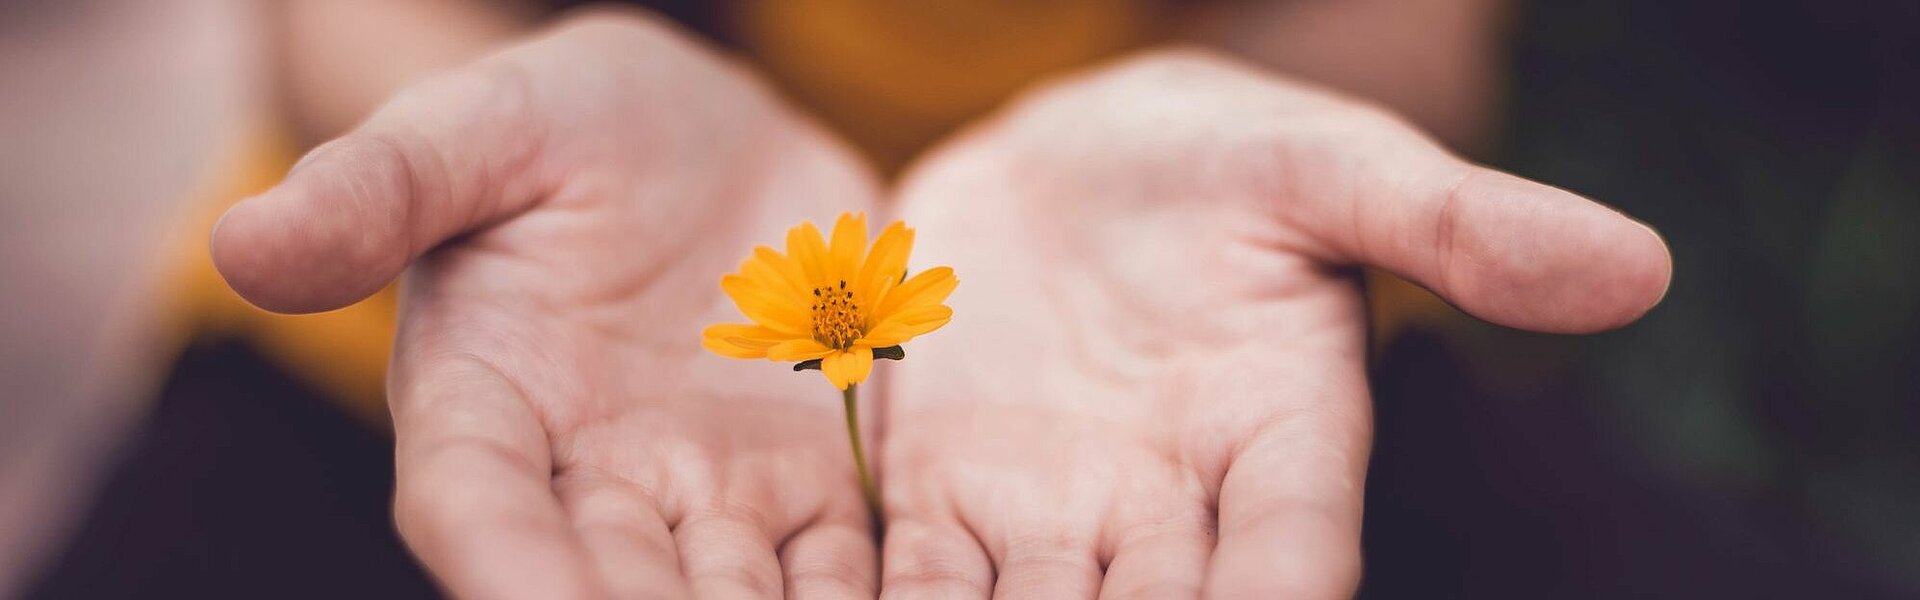 Hände halten eine Blume | Symbolbild für unsere Verantwortung gegenüber der Umwelt || Foto von Lina Trochez auf unsplash.com